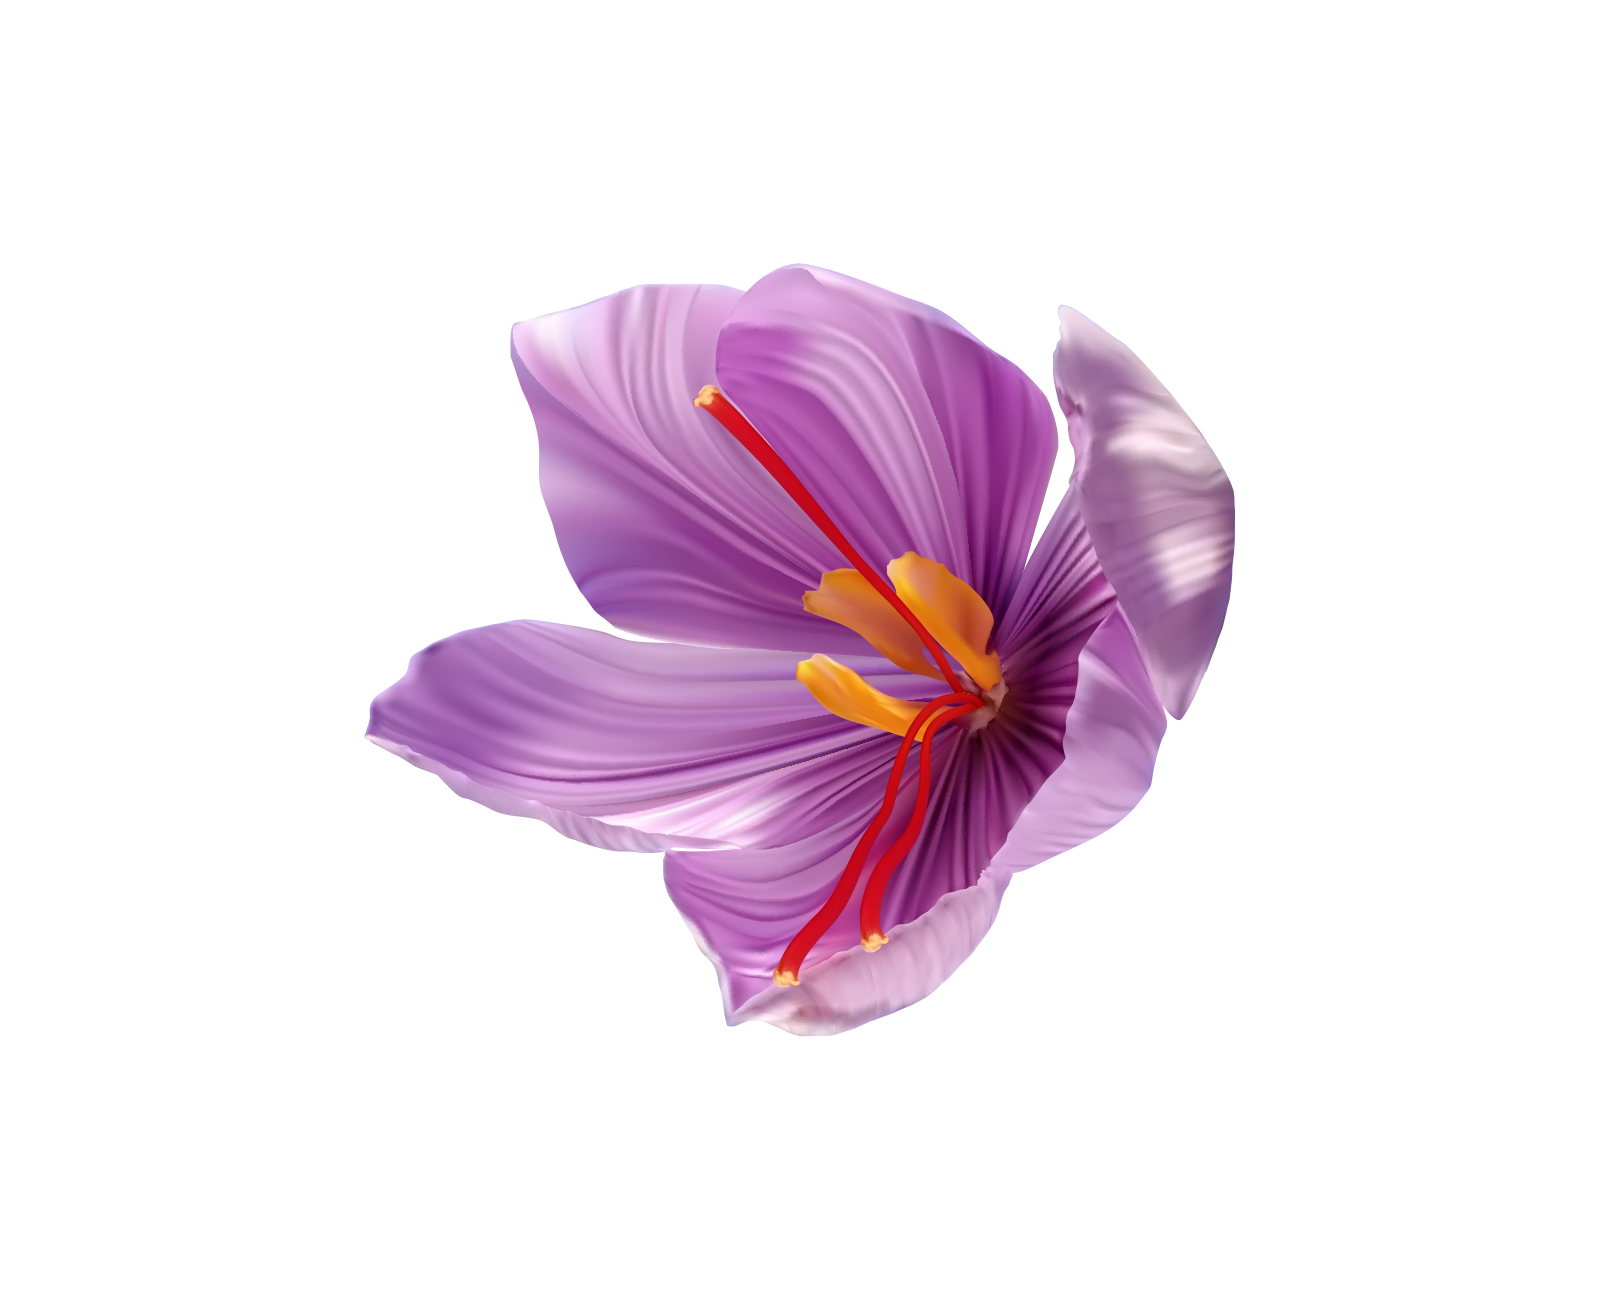 EXTRAIT DE FLEUR DE CROCUS	- Crocus sativus flower extract